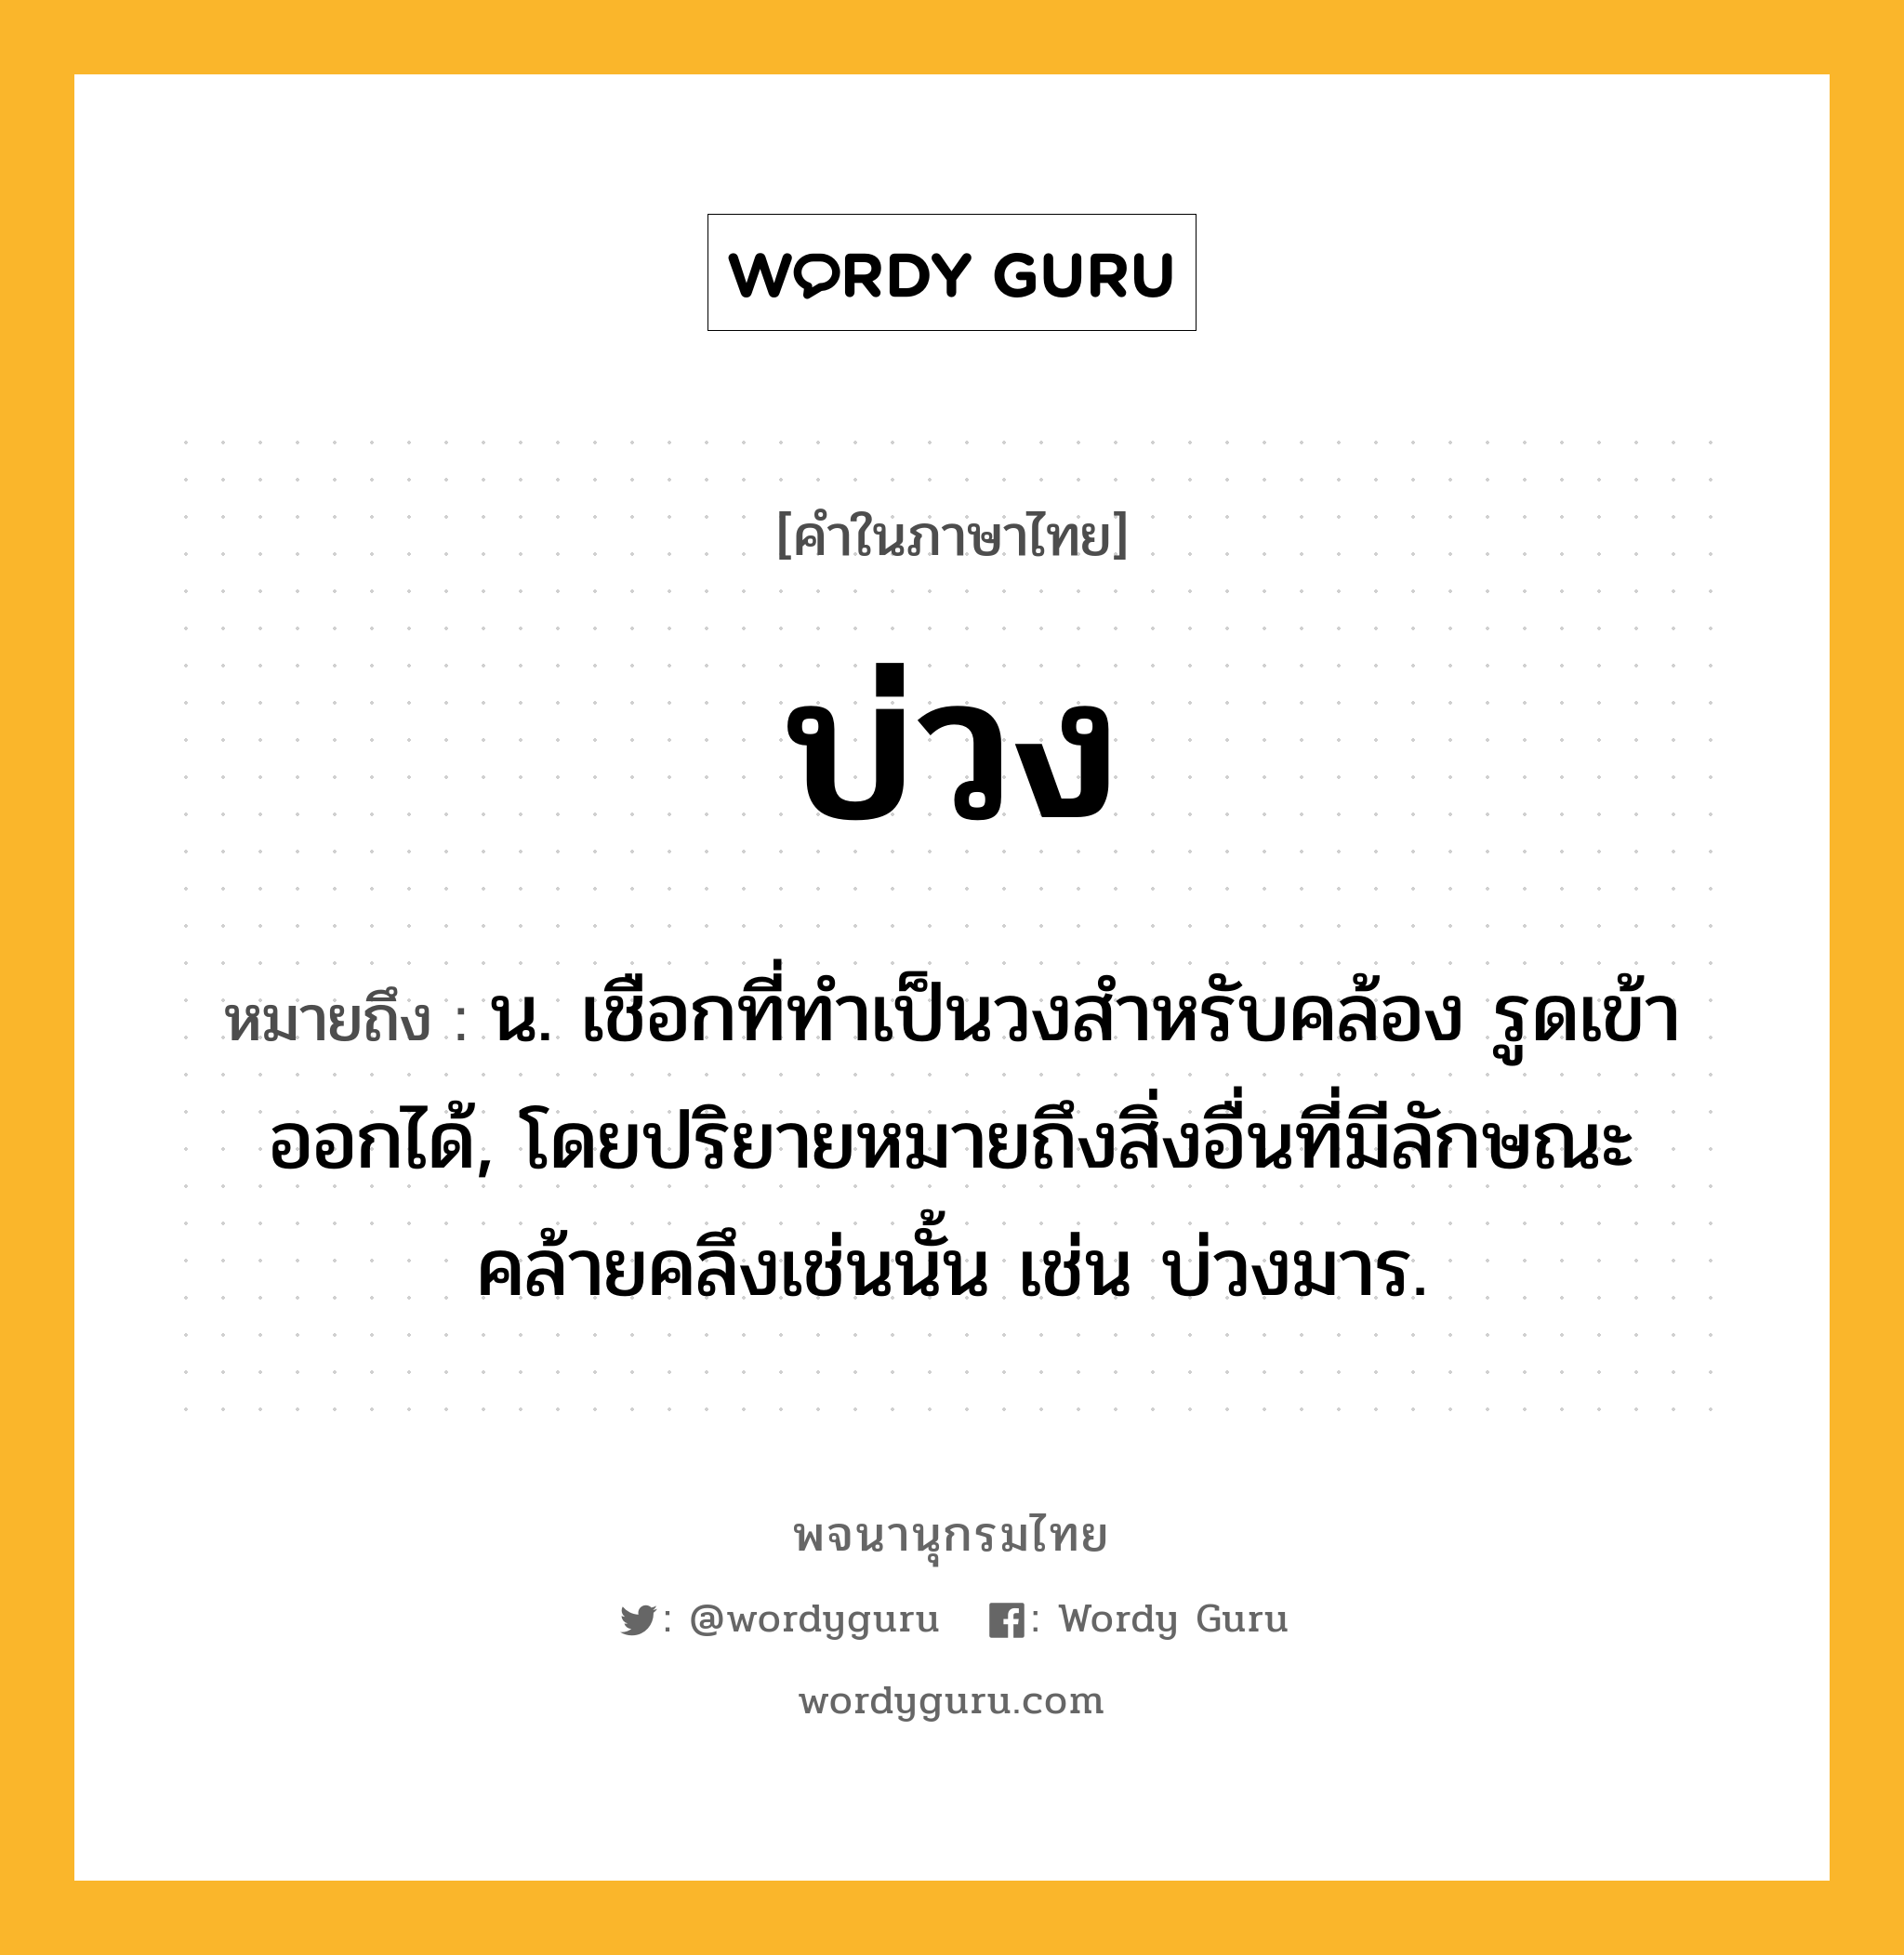 บ่วง หมายถึงอะไร?, คำในภาษาไทย บ่วง หมายถึง น. เชือกที่ทําเป็นวงสําหรับคล้อง รูดเข้าออกได้, โดยปริยายหมายถึงสิ่งอื่นที่มีลักษณะคล้ายคลึงเช่นนั้น เช่น บ่วงมาร.